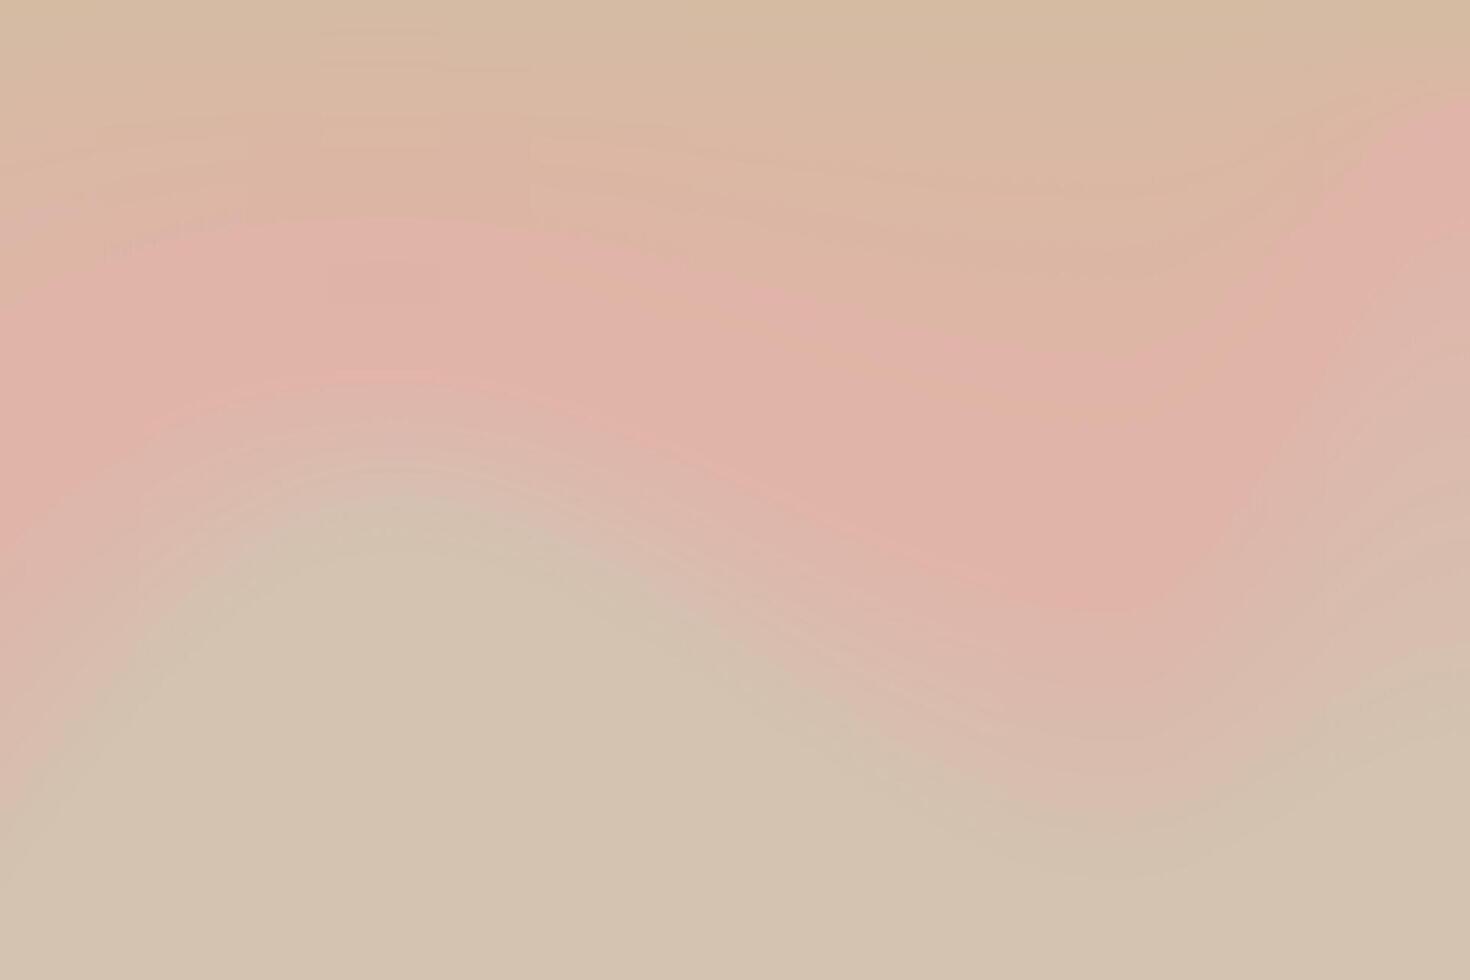 modisch ästhetisch abstrakt nackt Gradient Hintergrund mit Beige, Rosa, Pastell, Sanft verschwommen Muster. Hintergrund zum Sozial Medien Geschichten, Album Abdeckungen, Banner, Vorlagen zum Digital Marketing vektor